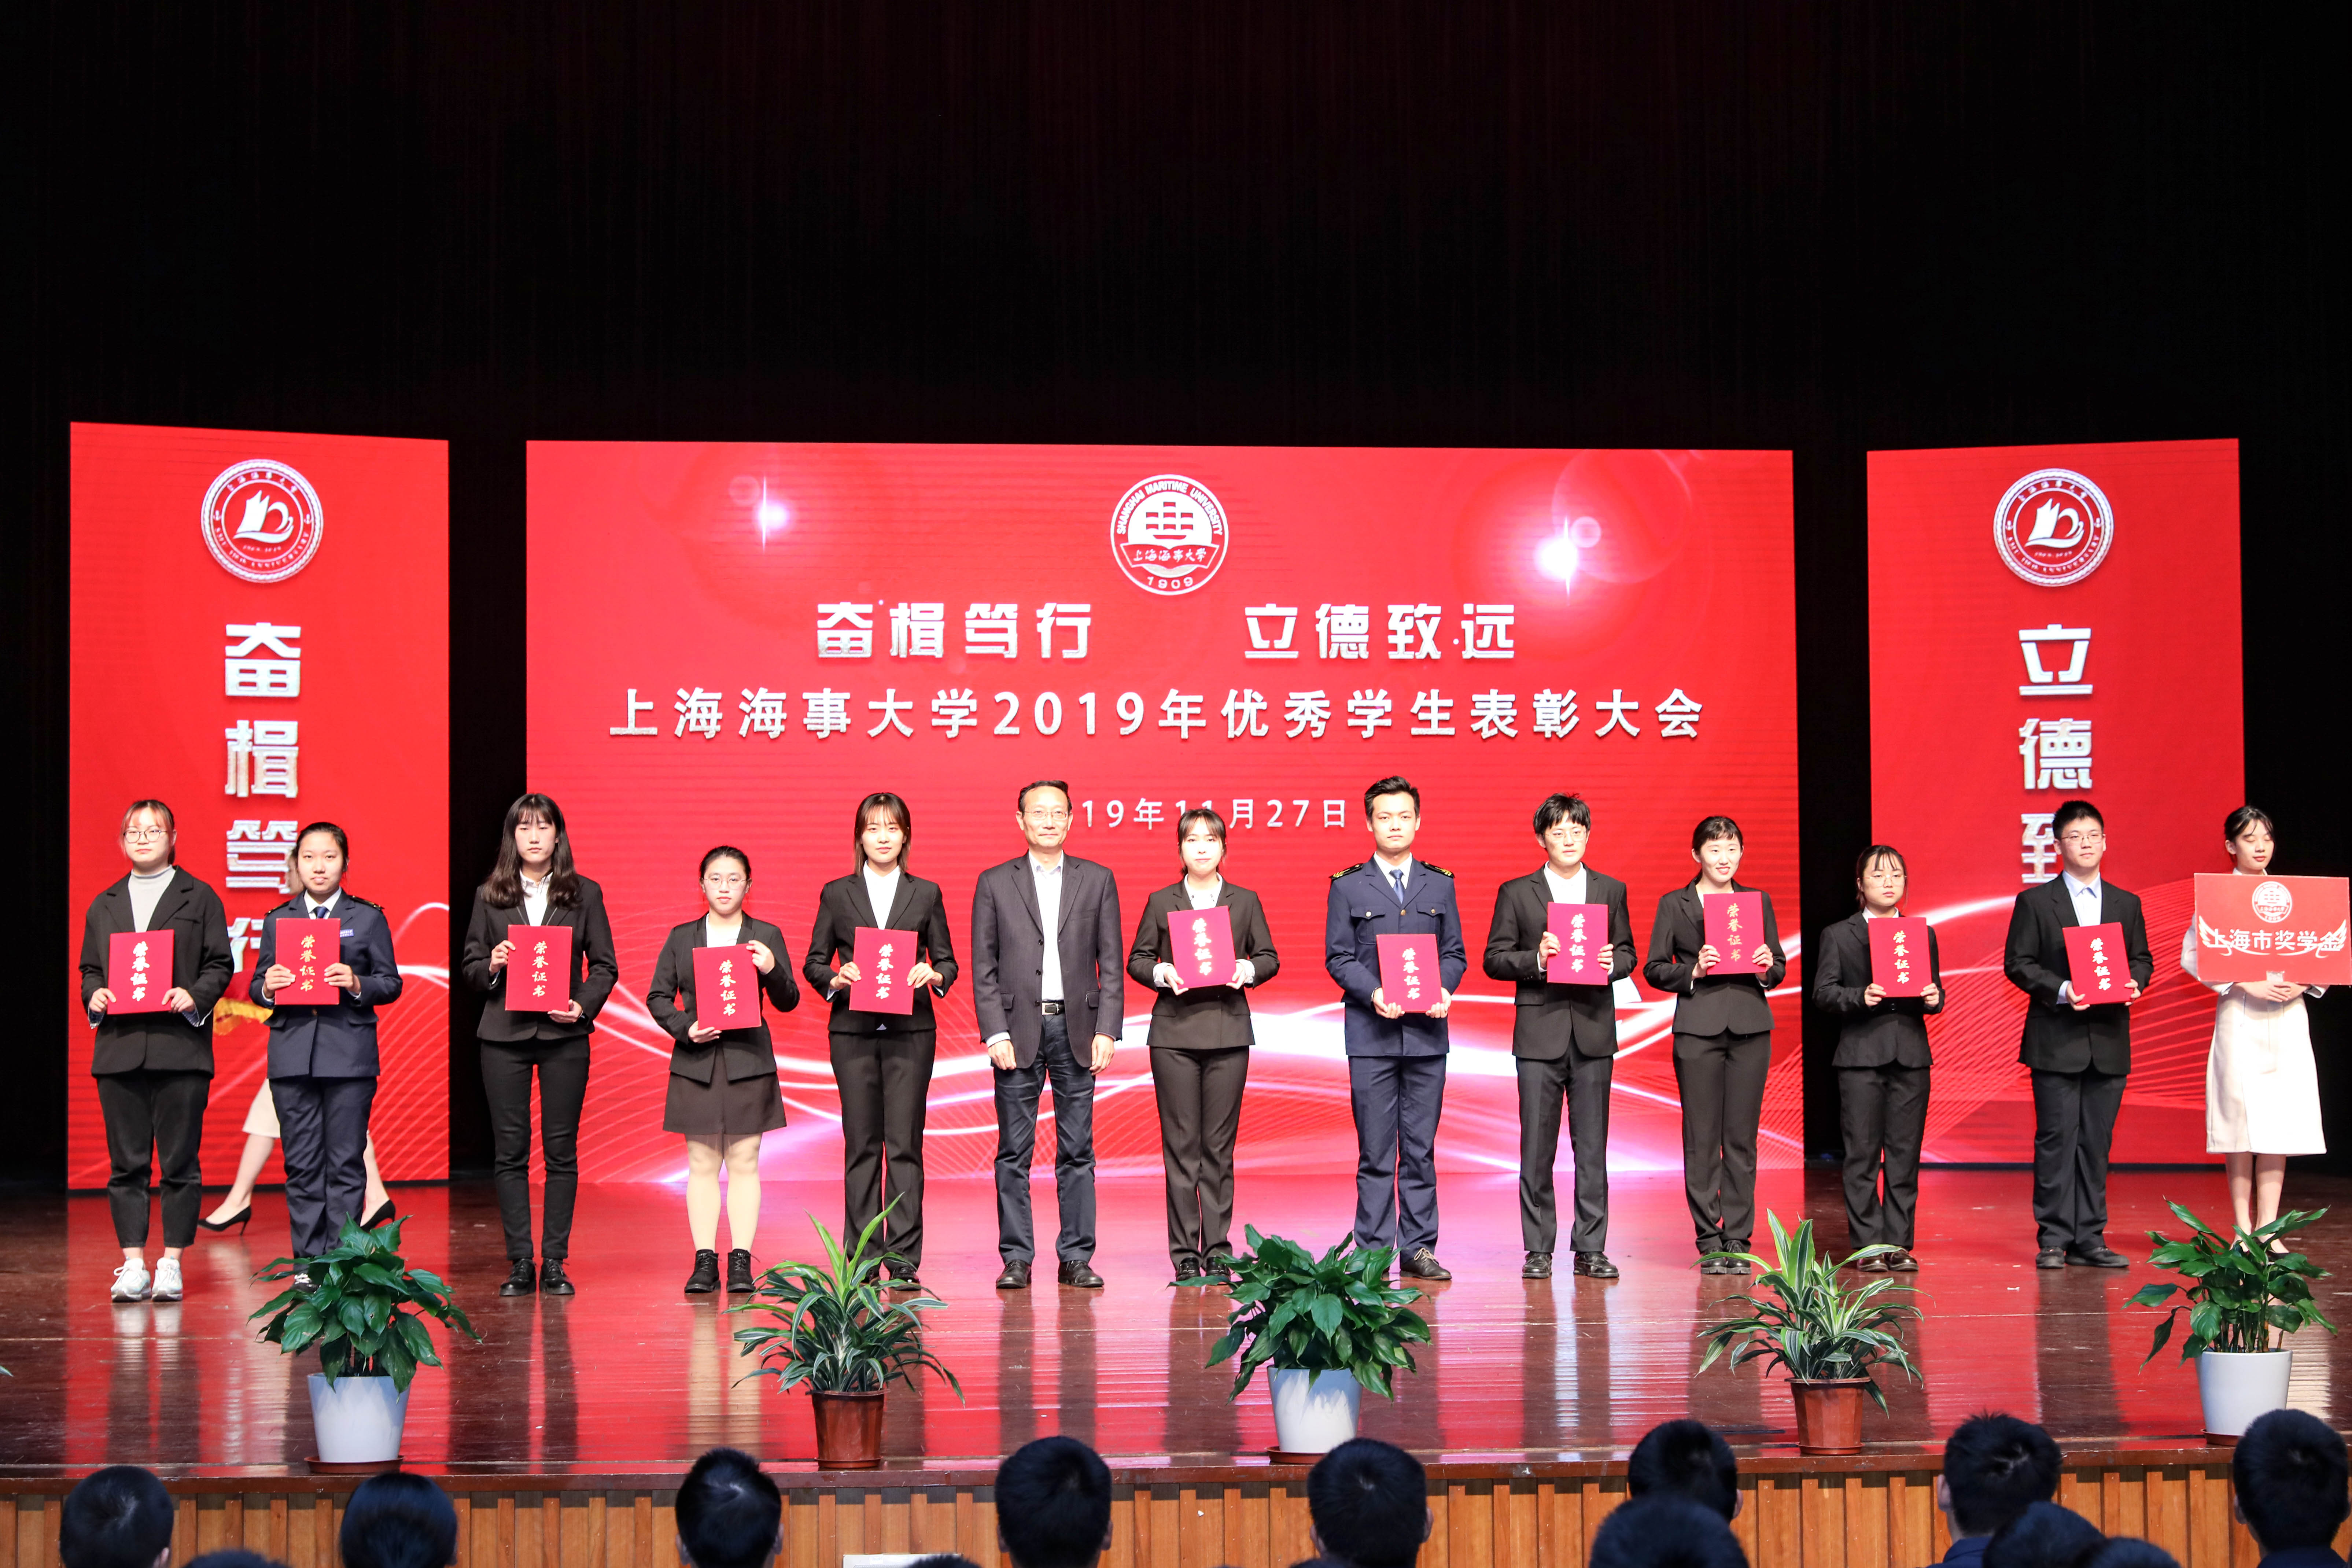 热烈祝贺上海海事大学“奋楫笃行立德致远”2019年优秀学生表彰大会成功举办